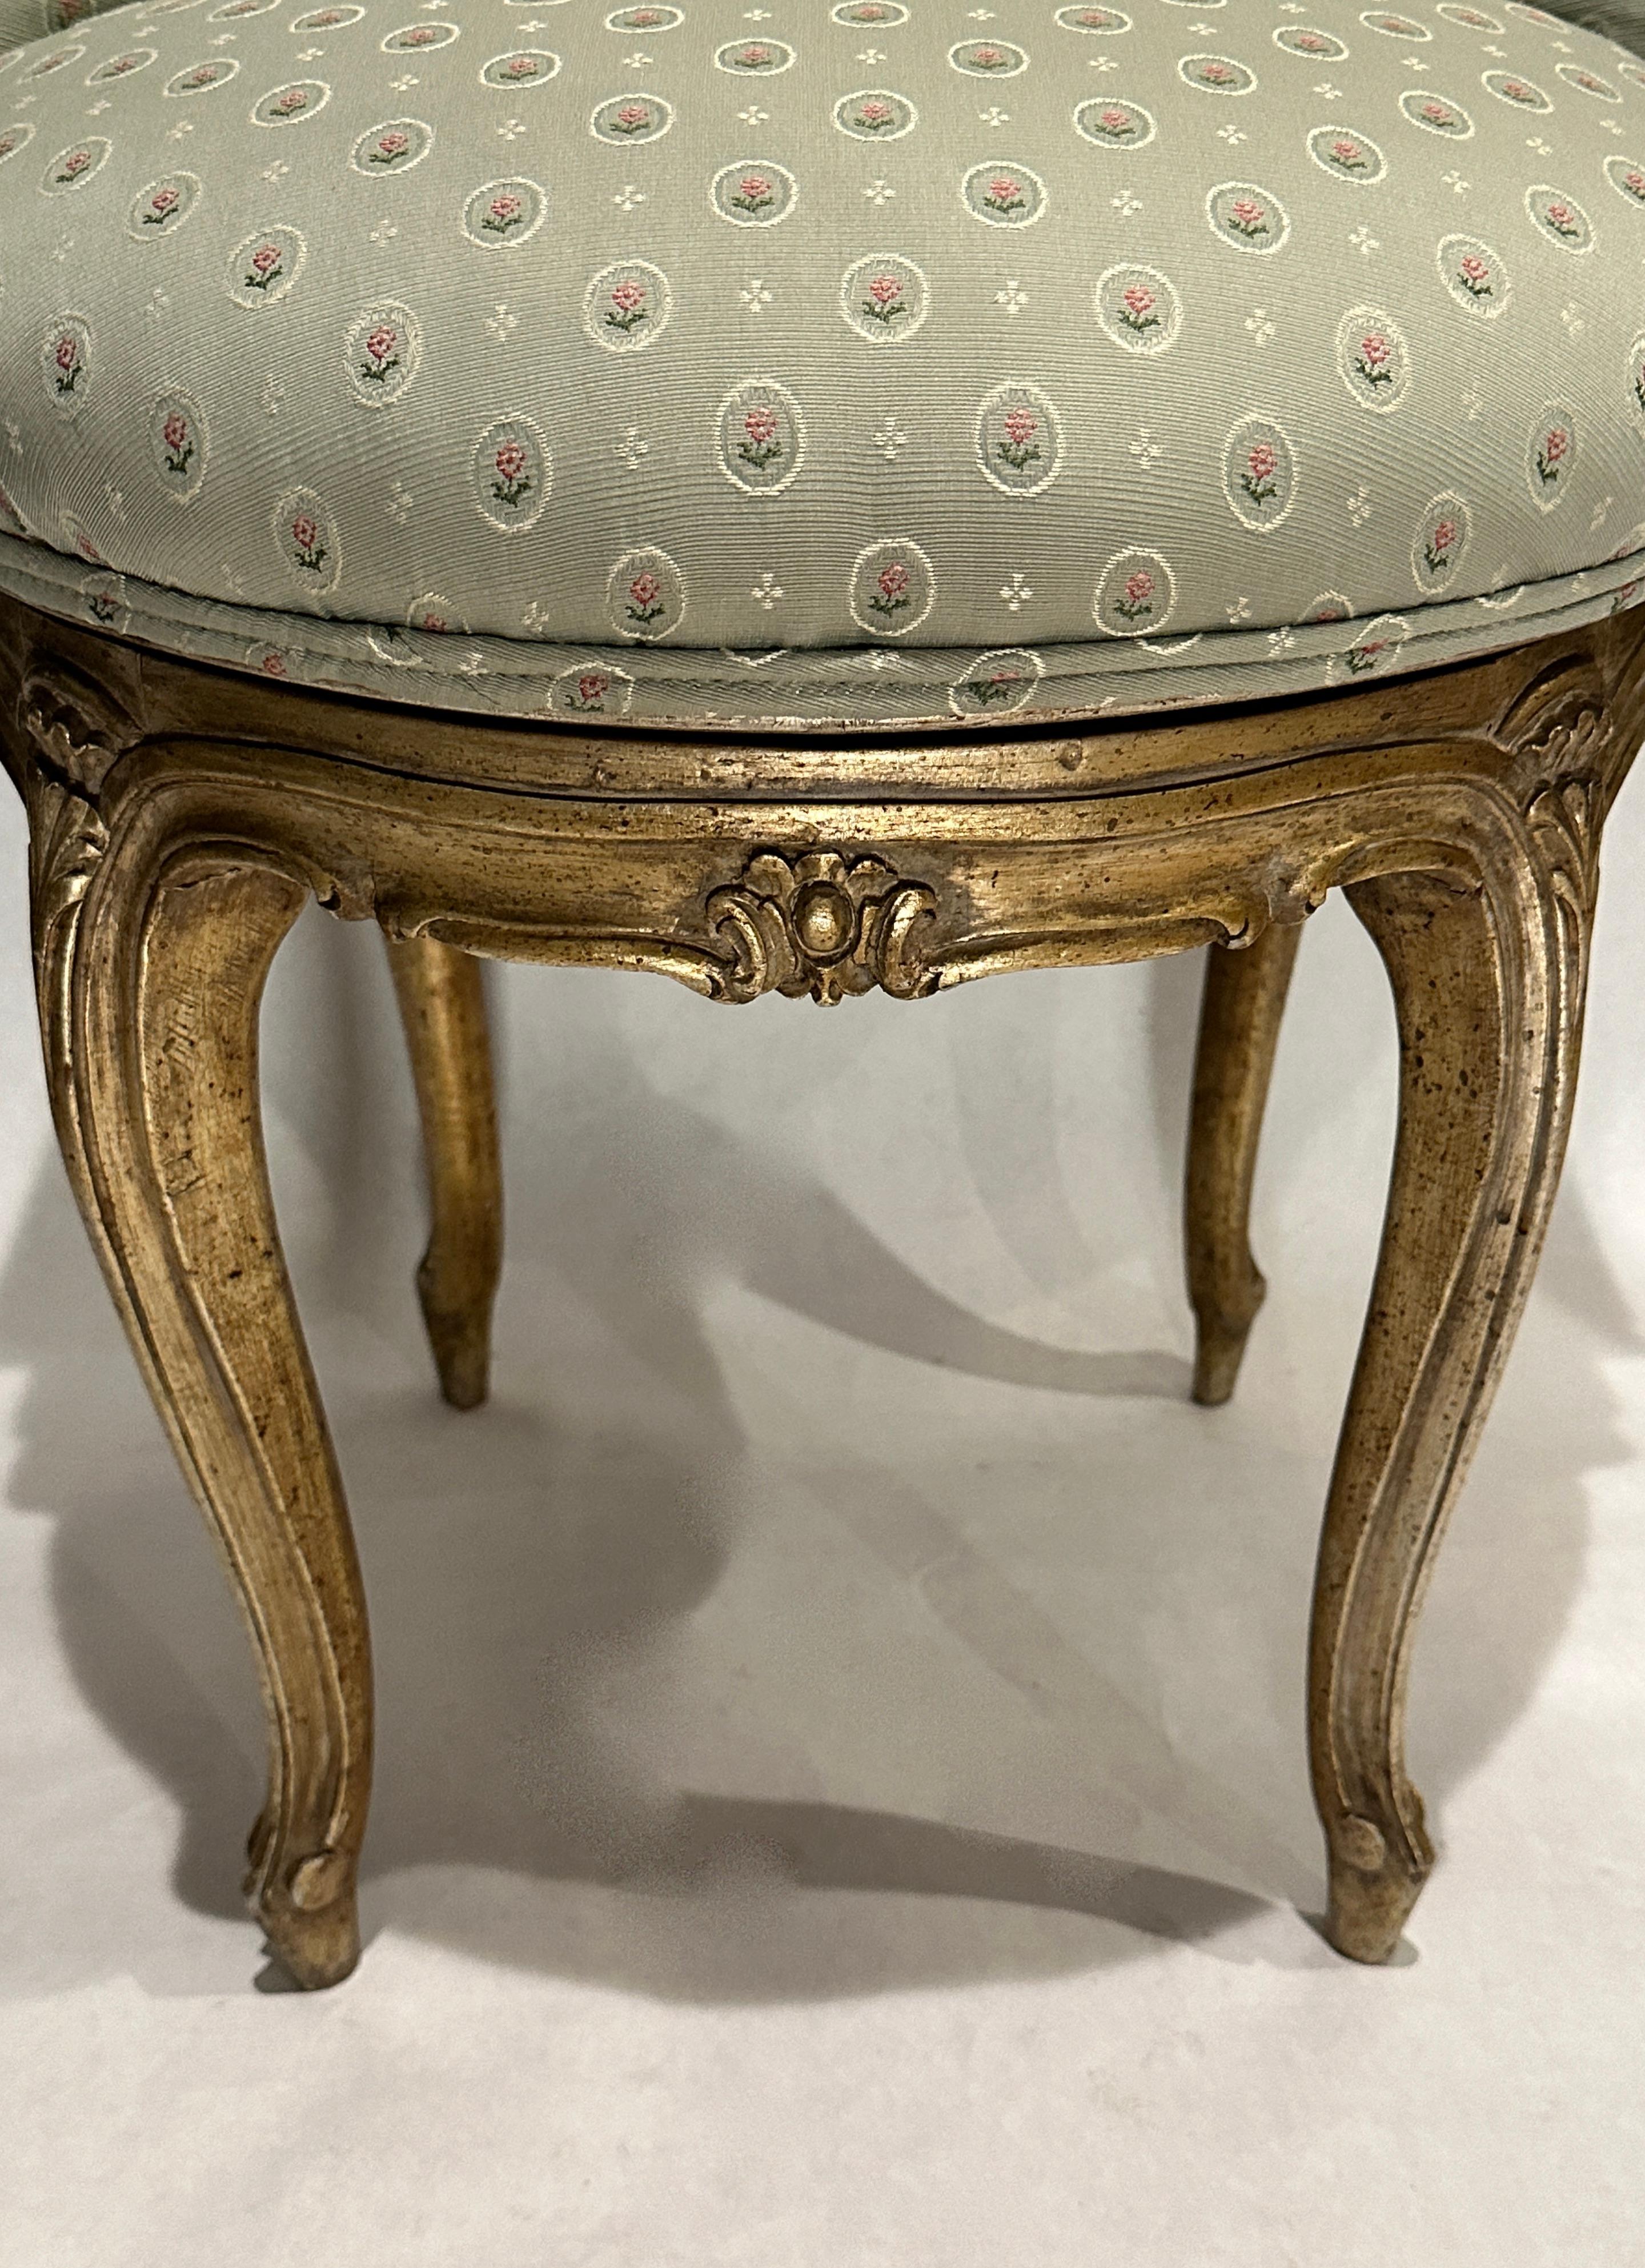 Drehstuhl im Stil Louis XV aus geschnitztem Holz und Silbervergoldung. Silberne Vergoldung mit dunkleren, antiken Schattierungen. Die Rückenlehne des Stuhls ist seitlich geschwungen und bildet flache Armlehnen.